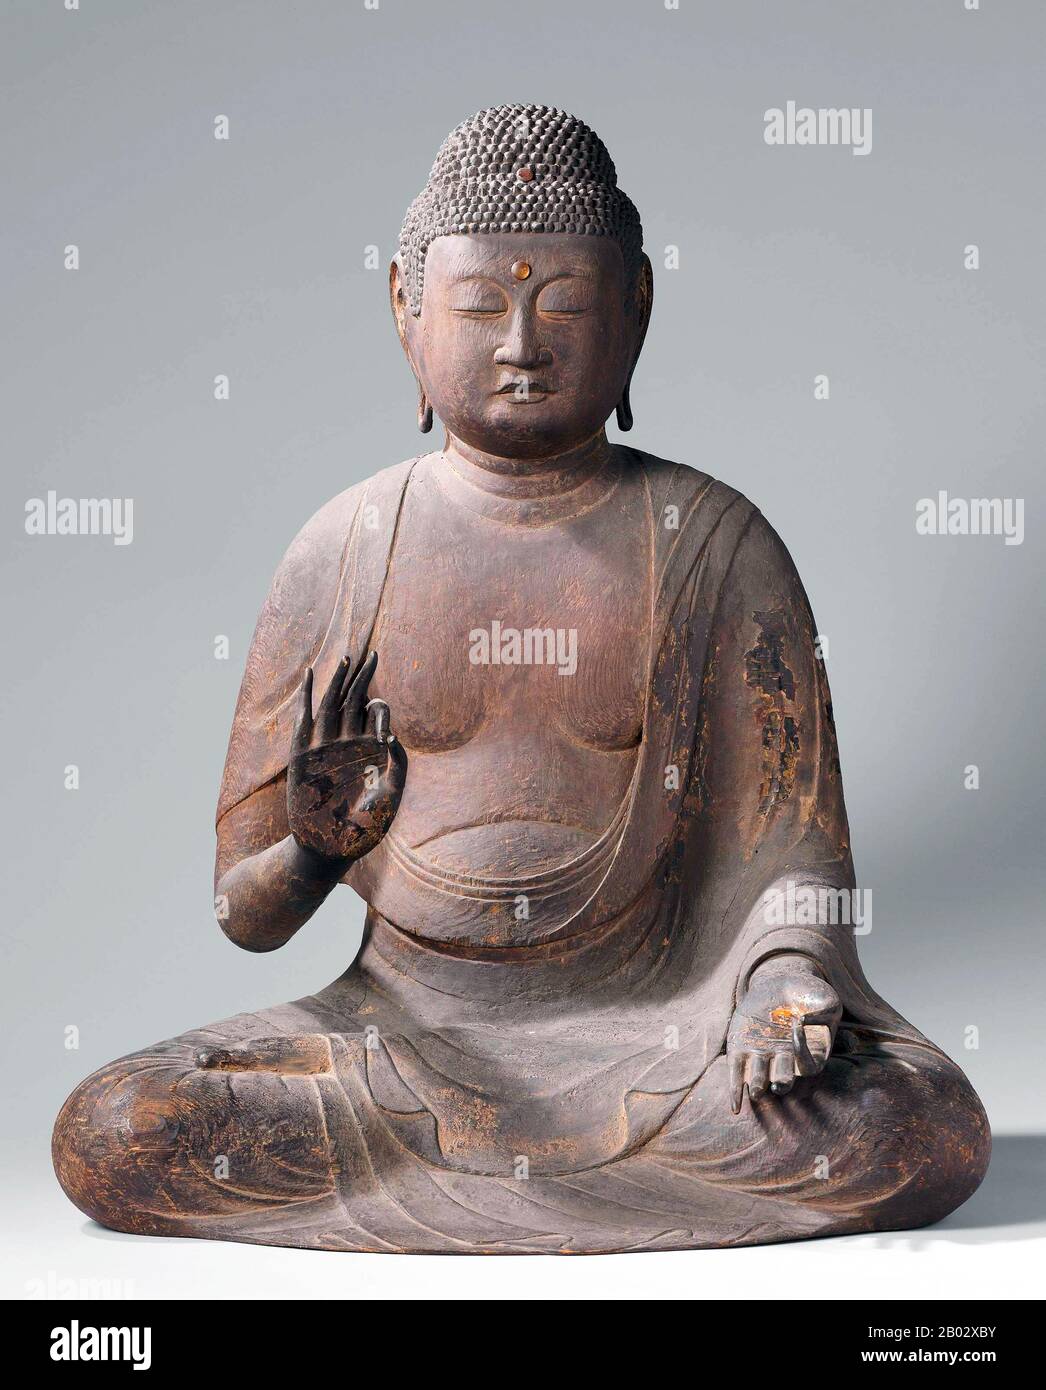 Amitabha è un buddha celeste descritto nelle Scritture della scuola Mahayana del Buddismo. Amitabha è il principale Buddha della setta pure Land, un ramo del buddismo praticato principalmente nell'Asia orientale, mentre in Vajrayana Amitabha è conosciuto per il suo attributo di longevità, magnetizzante elemento di fuoco rosso, l'aggregato di discernimento, percezione pura e la profonda consapevolezza del vuoto dei fenomeni. Secondo queste Scritture, Amitabha possiede infiniti meriti derivanti da buone azioni in innumerevoli vite passate come un bodhisattva chiamato Dharmakara. 'Amitabha' è tradotto come 'luce infinita', quindi Foto Stock